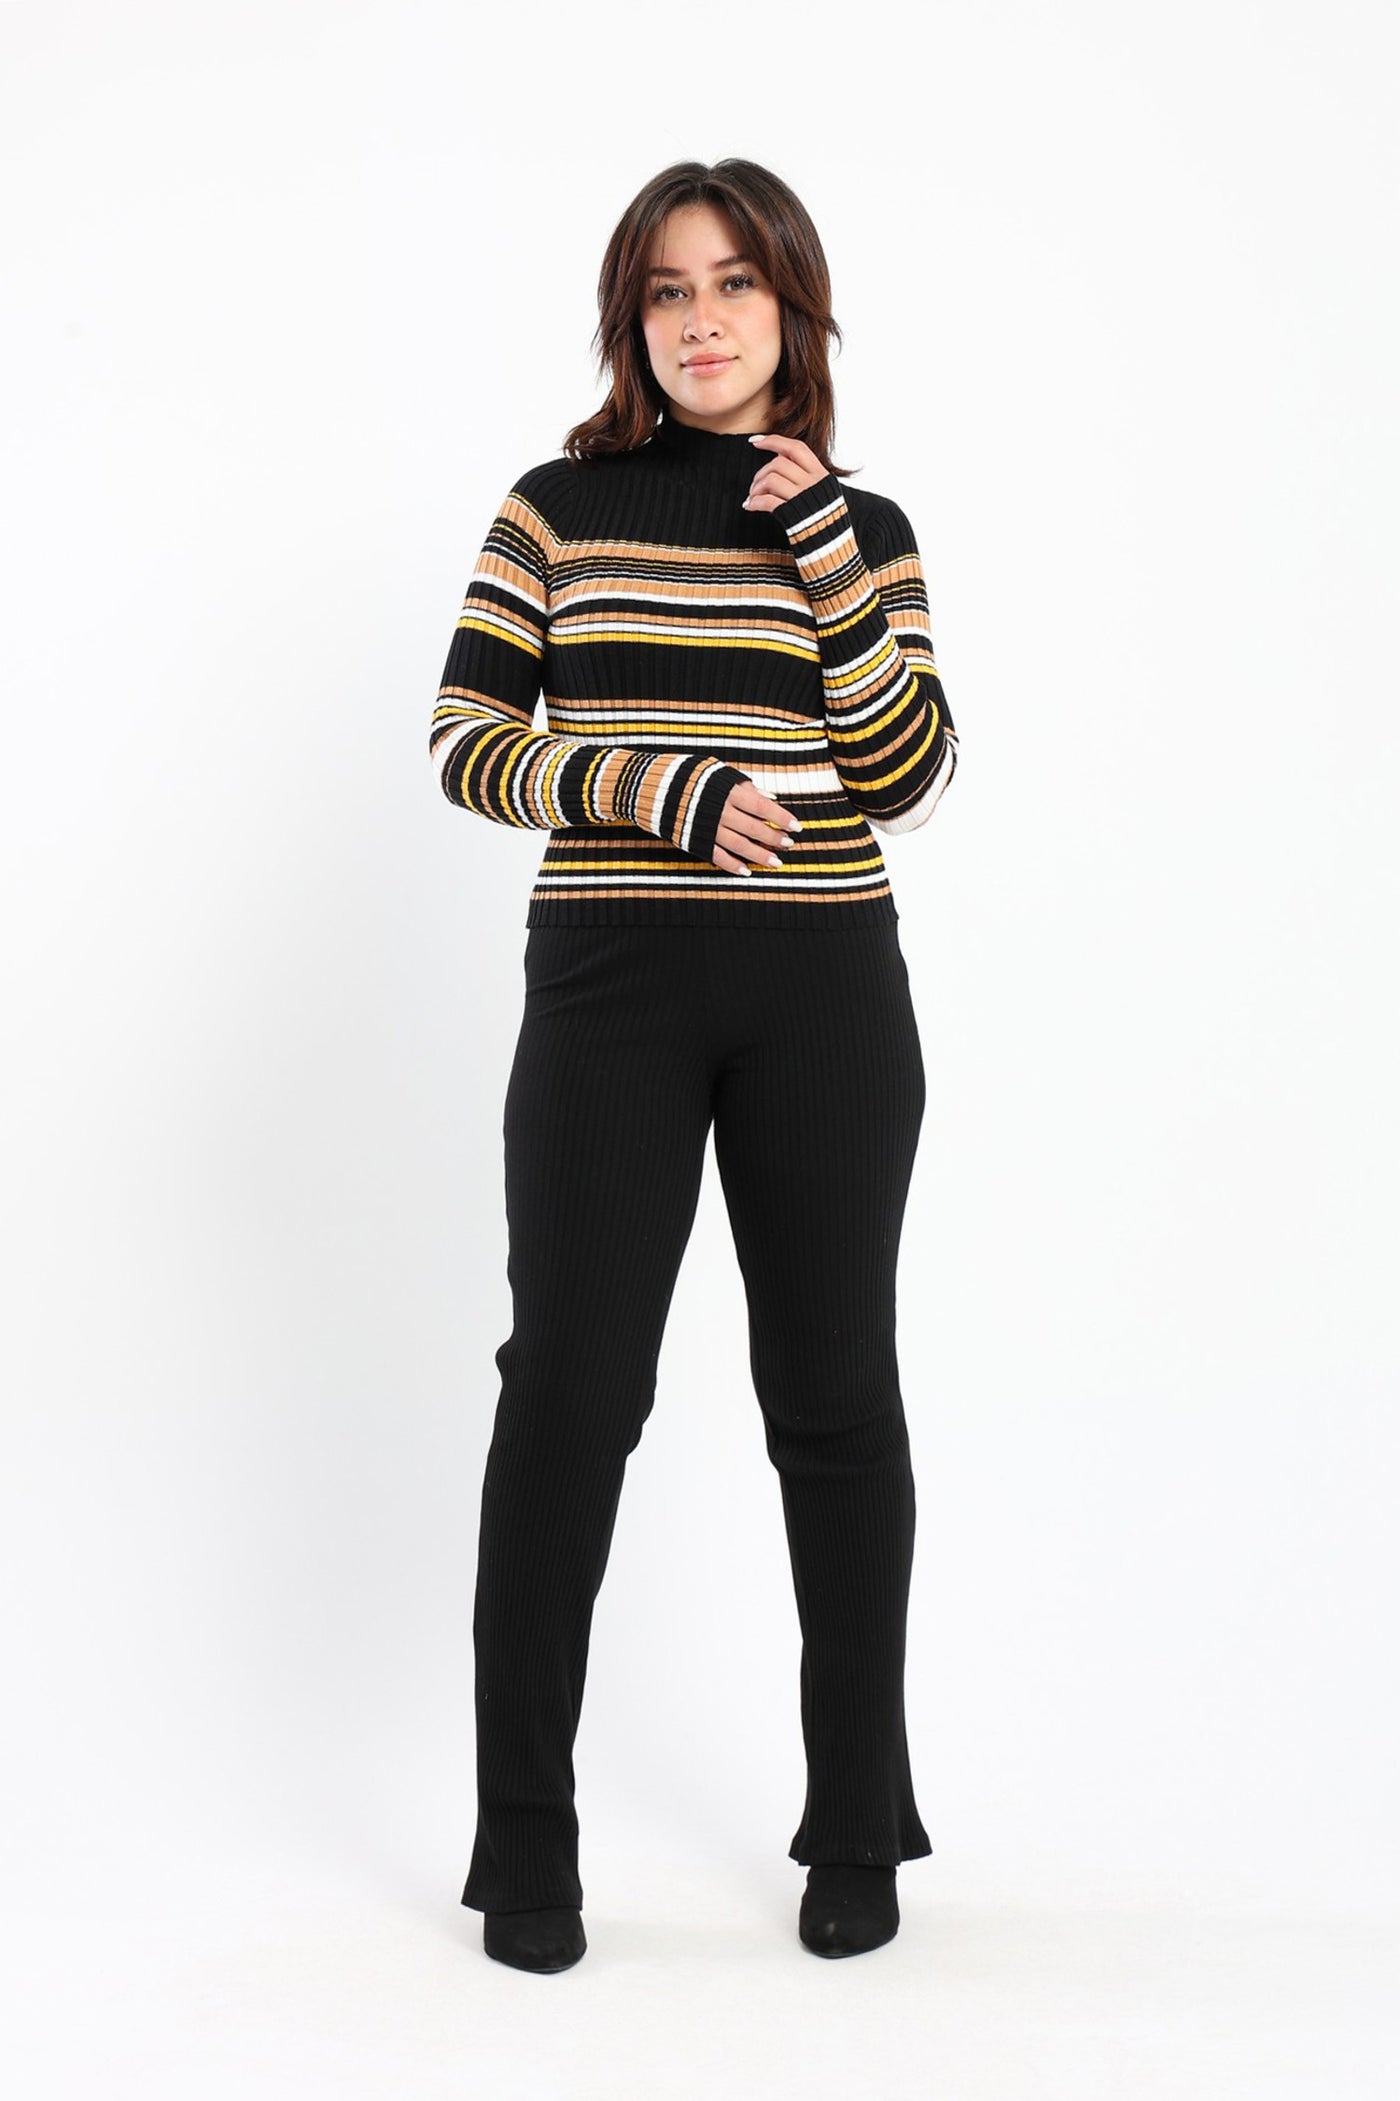 Pullover - Multicolored Striped - Turtleneck